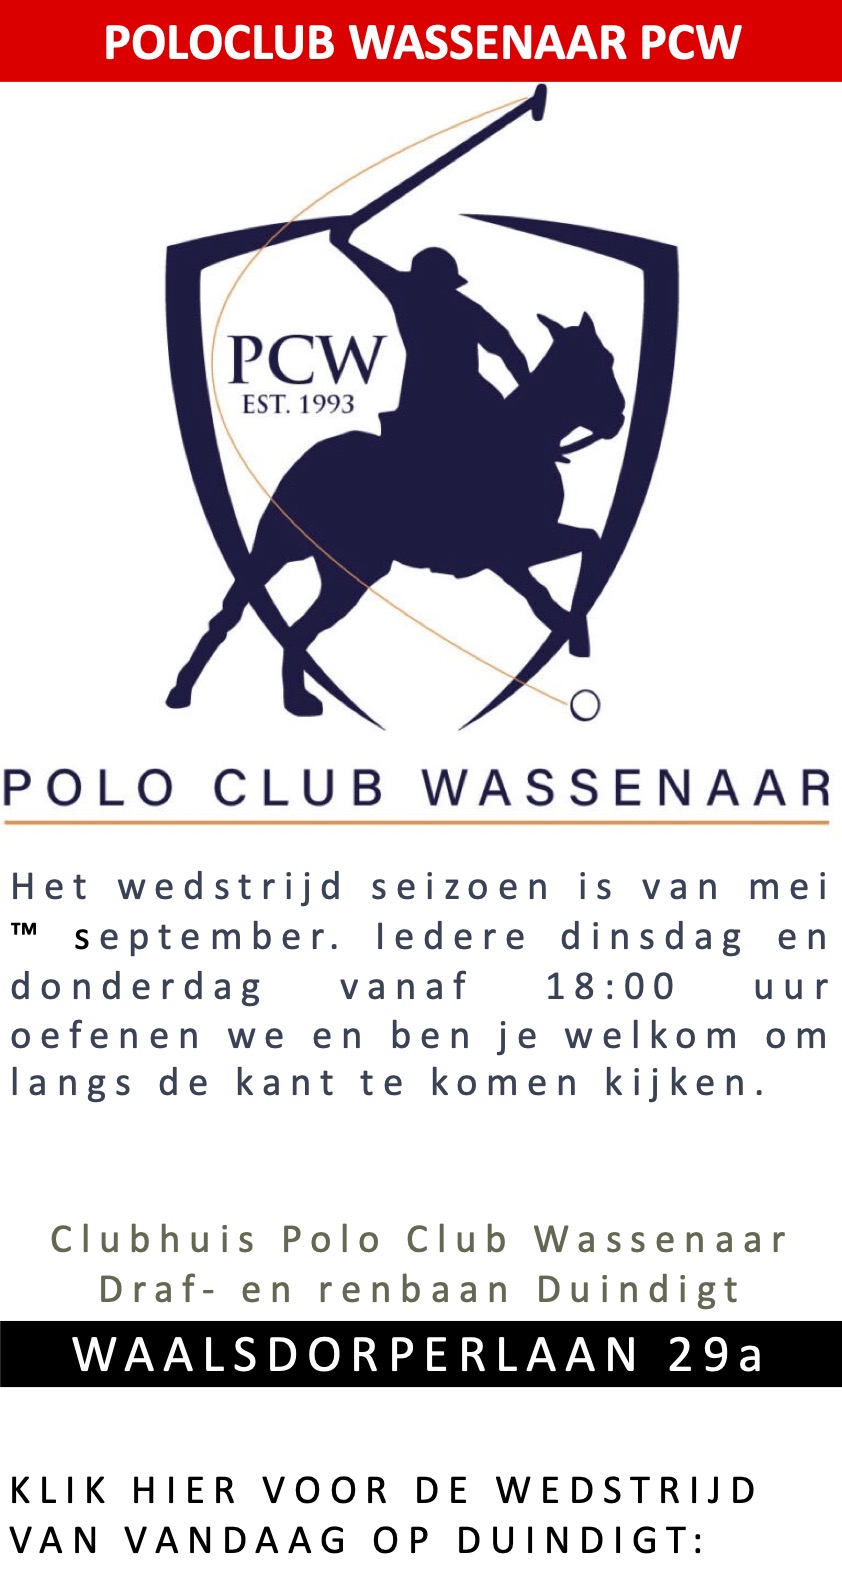 Polo Club Wassenaar a